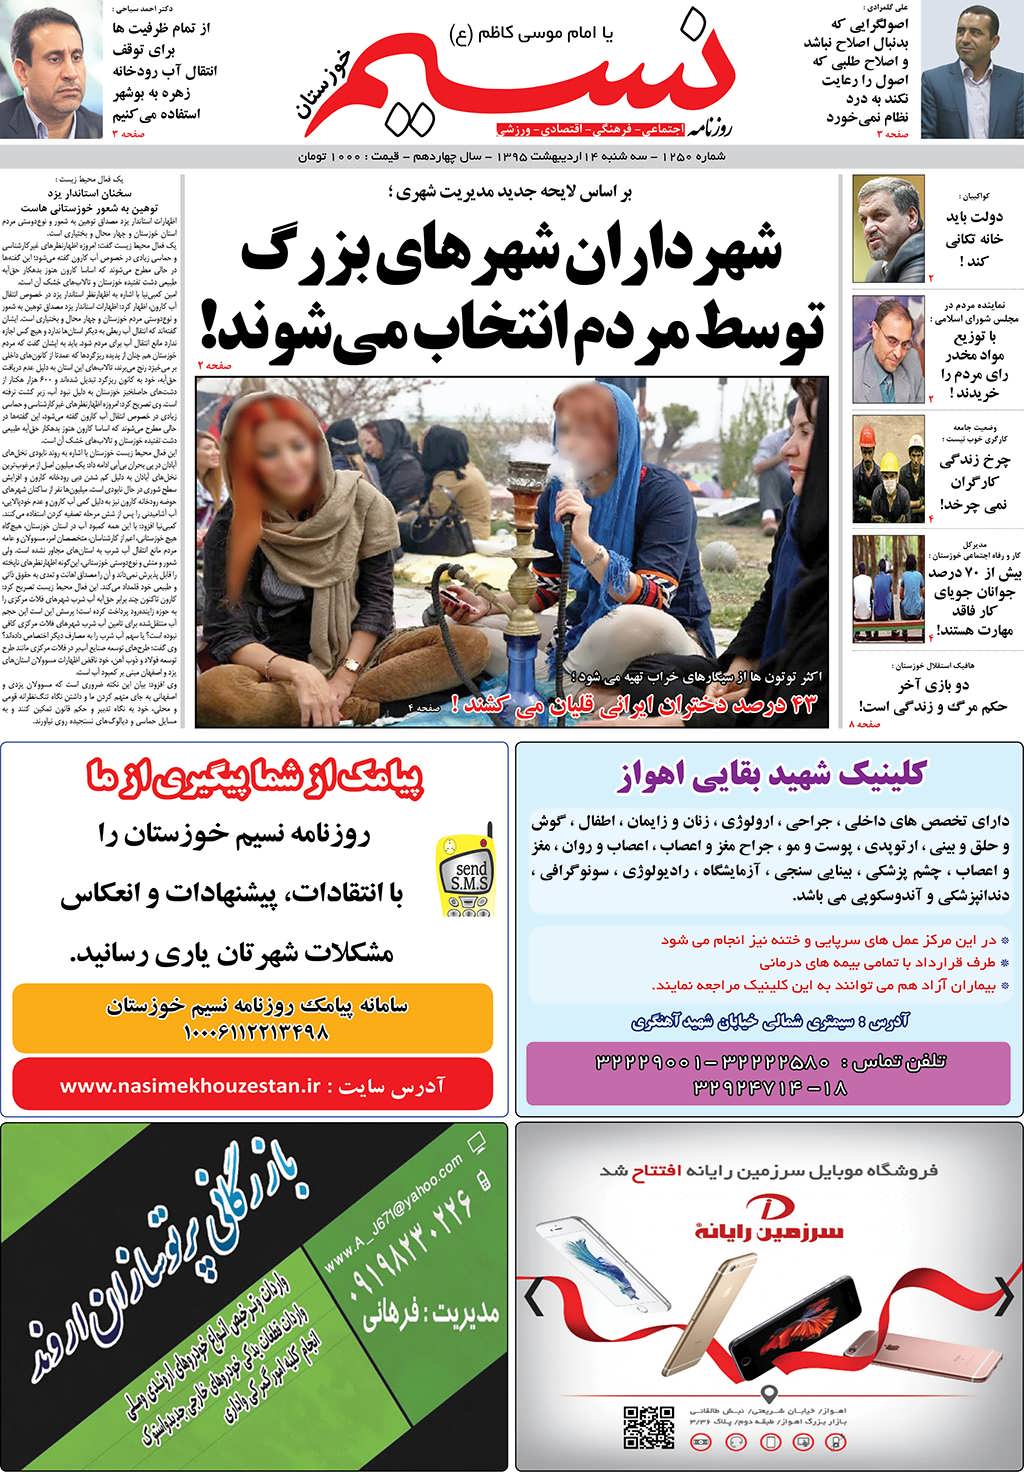 صفحه اصلی روزنامه نسیم شماره 1250